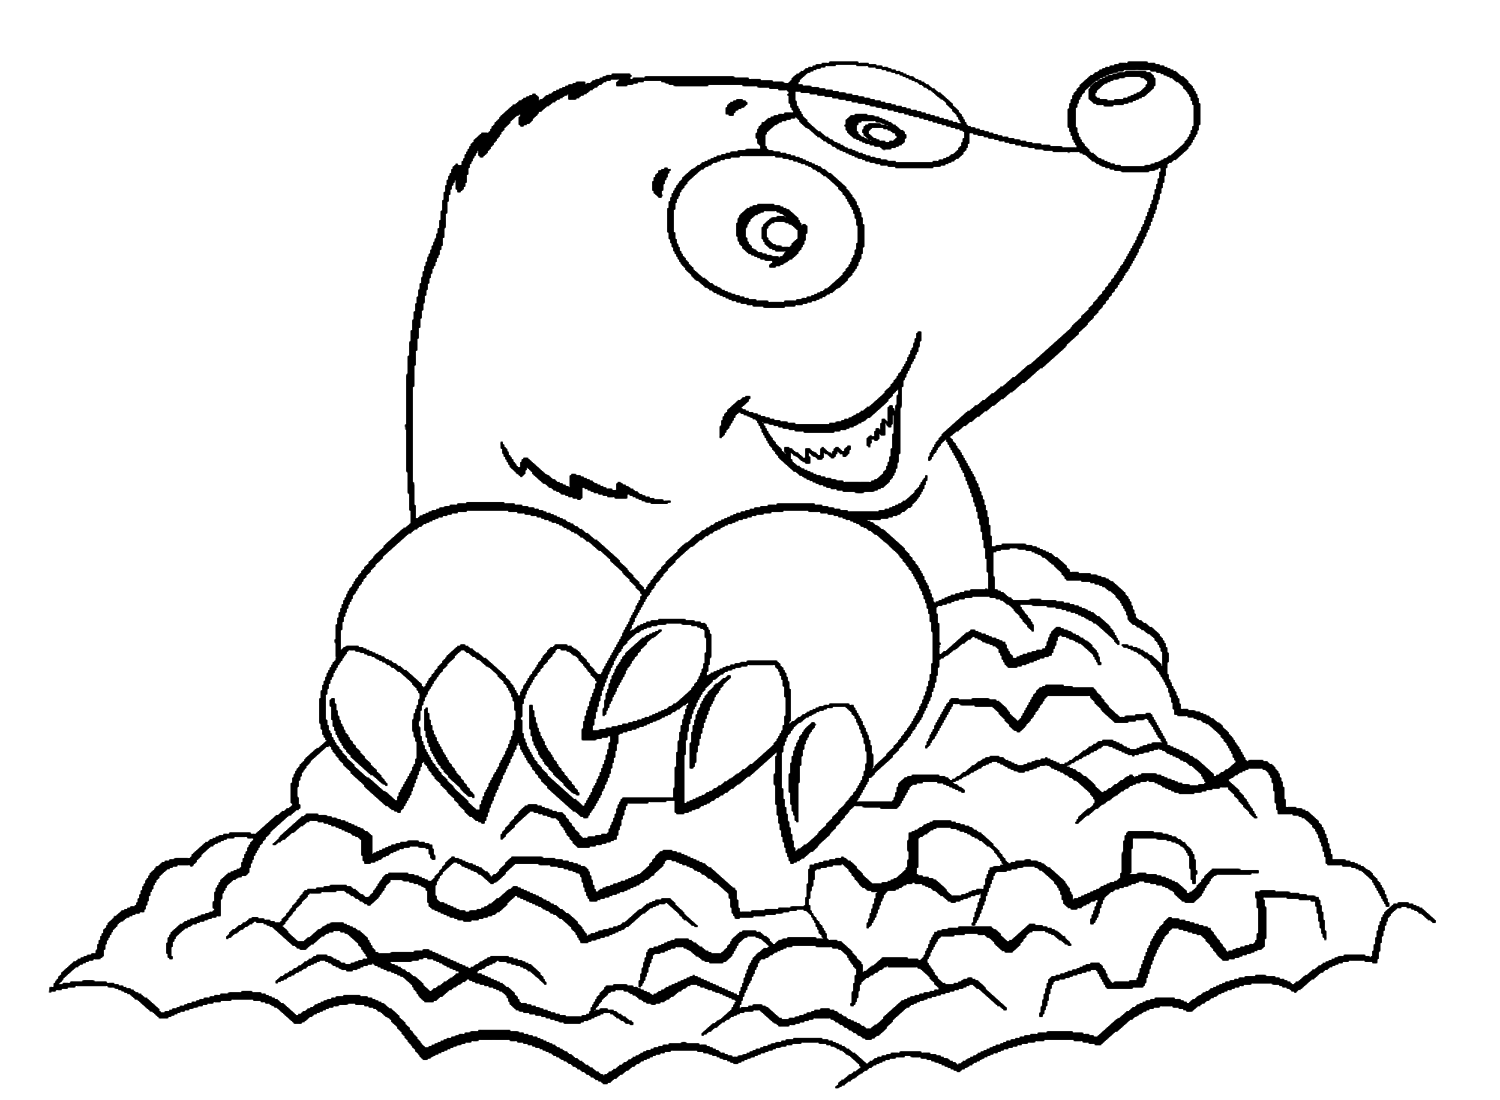 Cartoon Mole from Mole